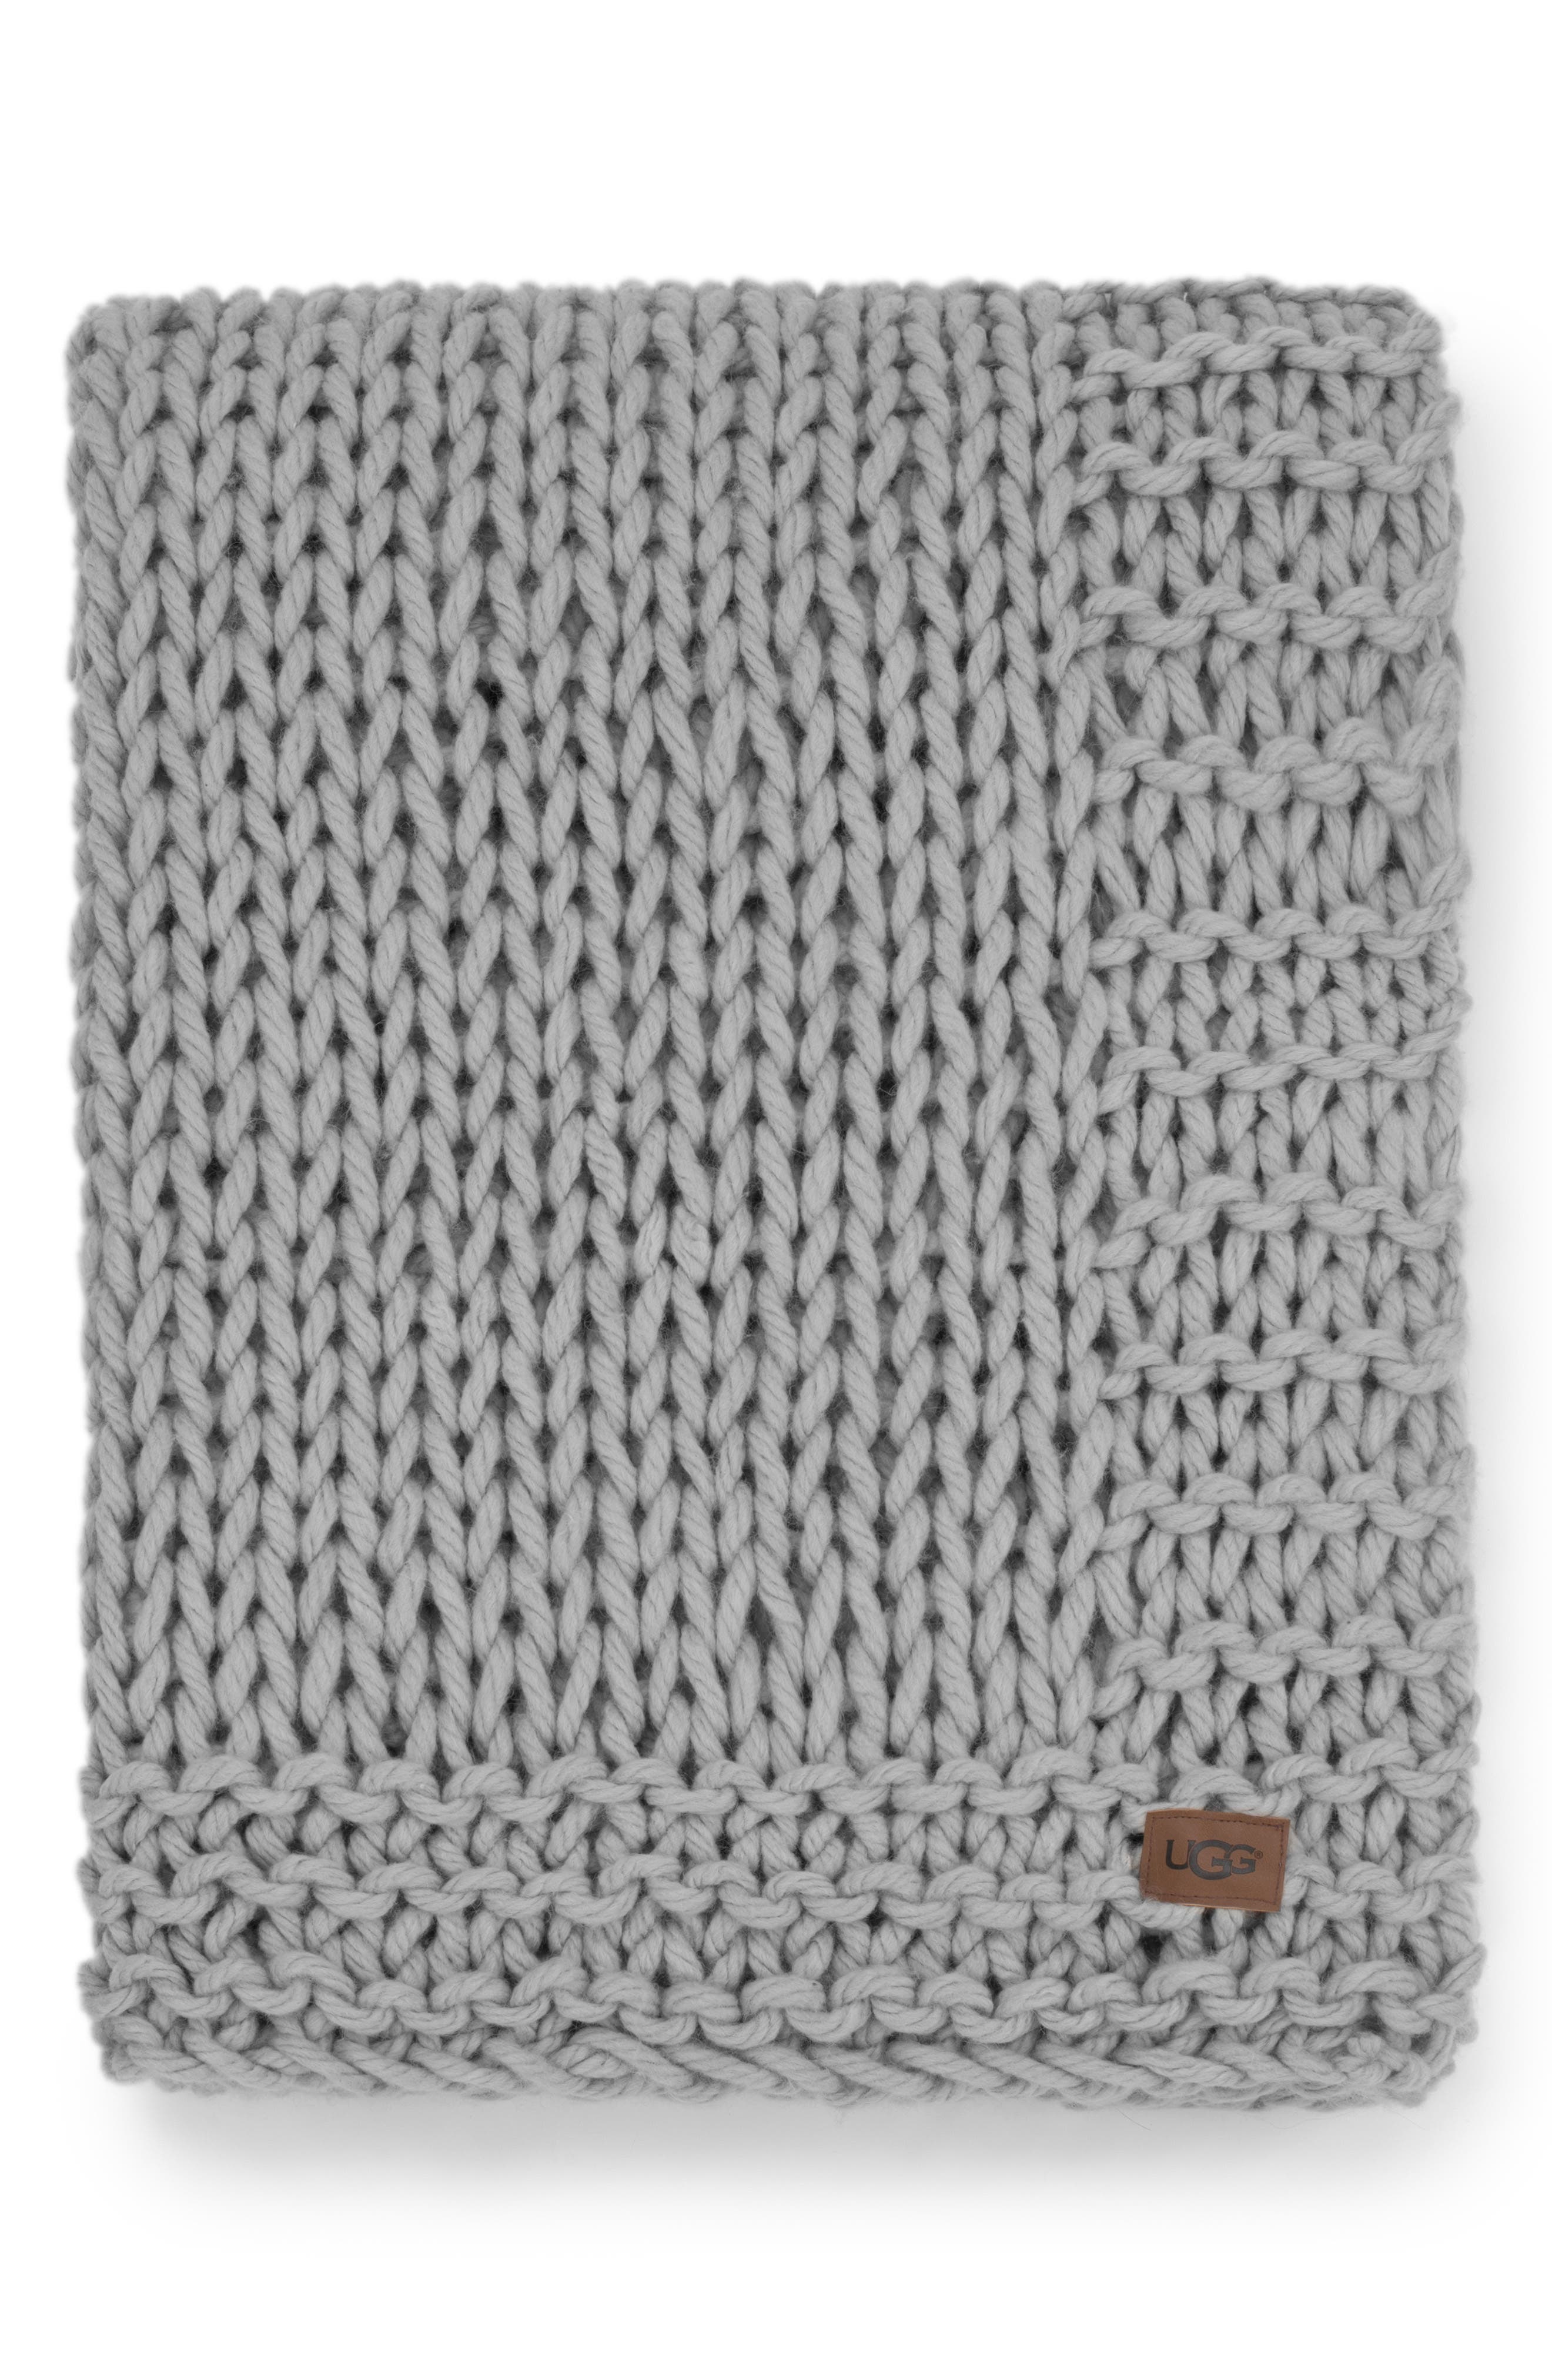 ugg blanket knit